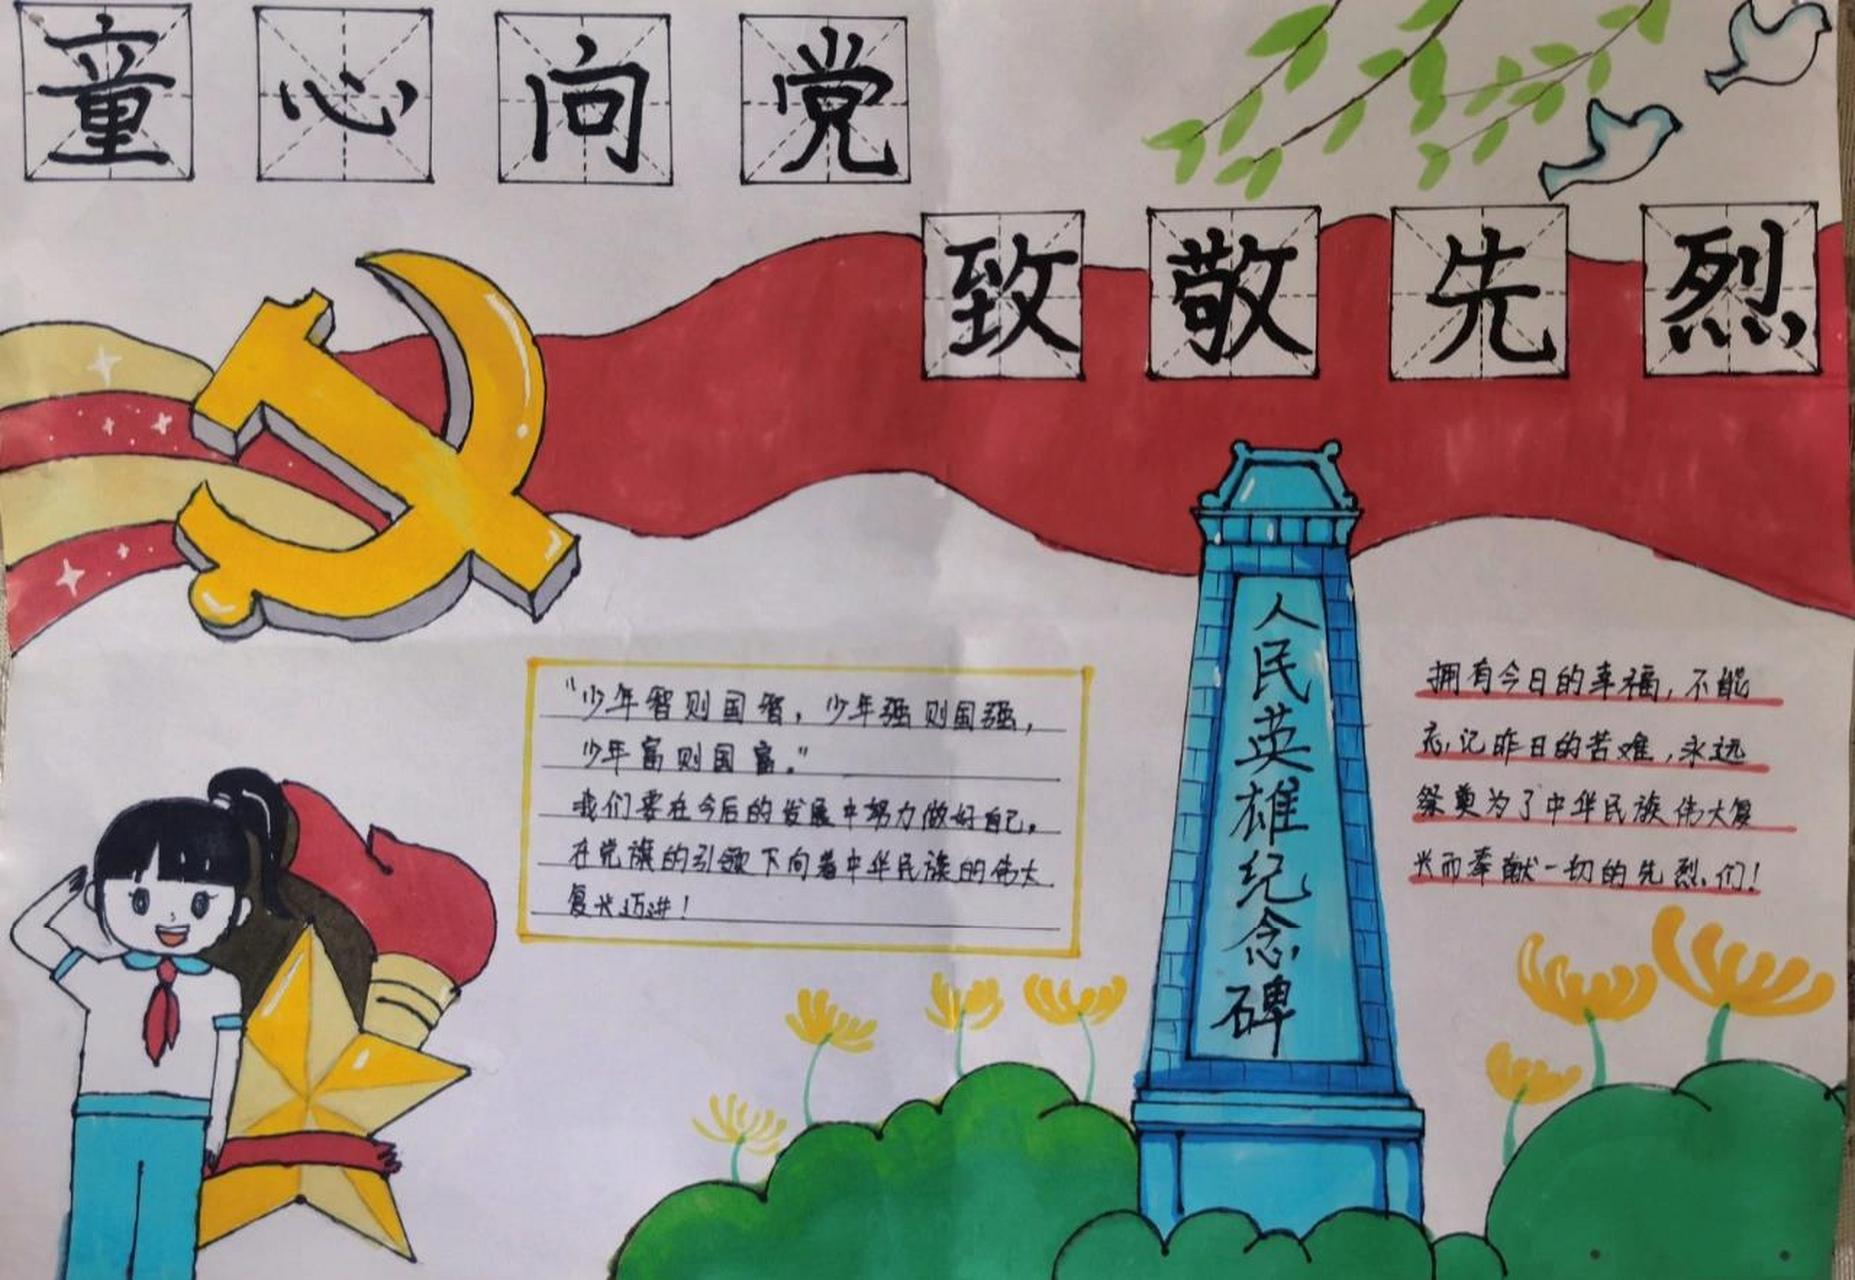 中国革命党手抄报图片